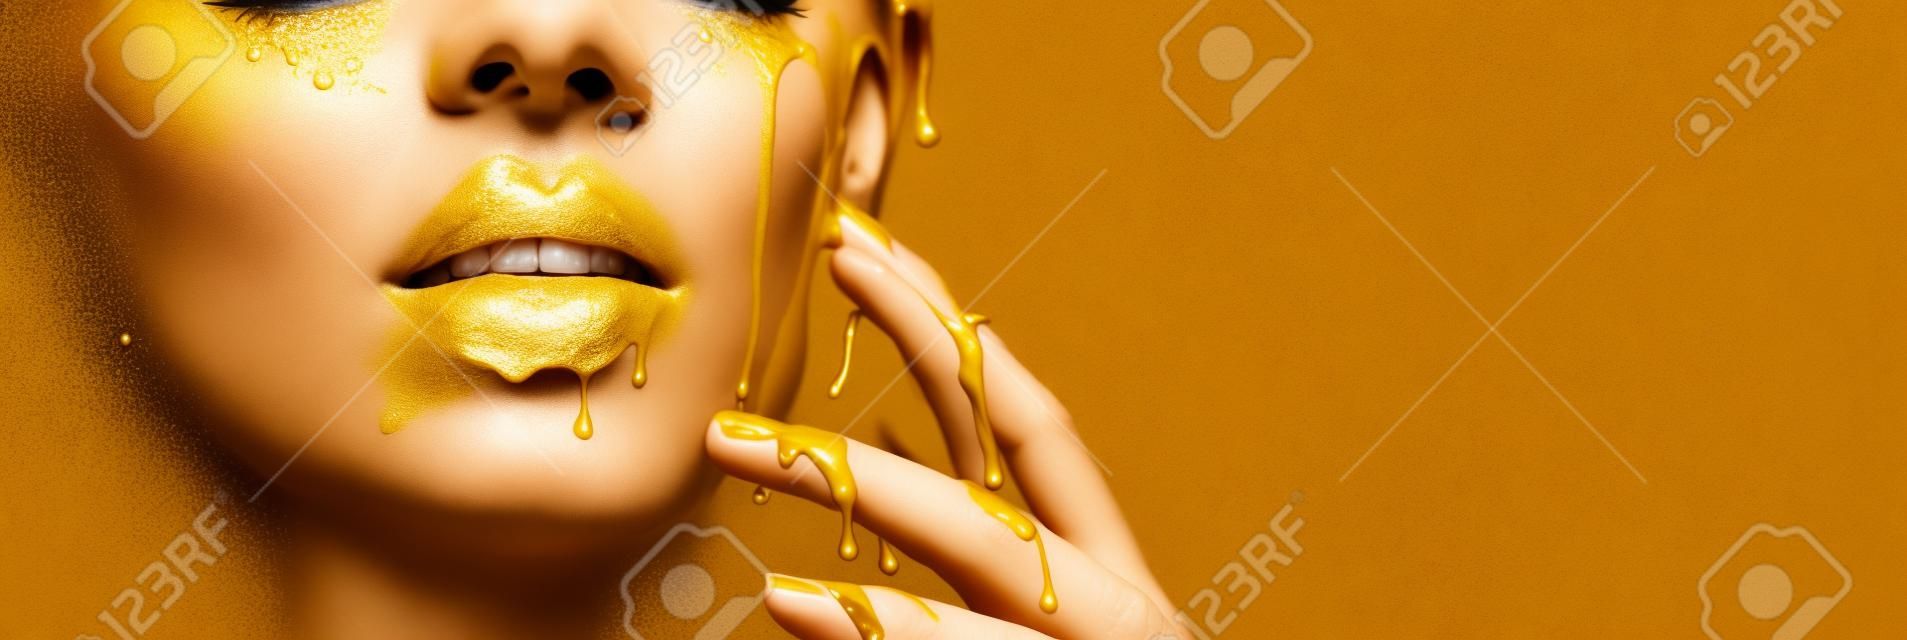 얼굴 입술과 손에서 황금색 페인트 얼룩이 떨어지고, 아름다운 모델 소녀의 입에 황금색 액체가 떨어지고, 창의적인 추상 화장이 됩니다. 아름다움 여자 얼굴